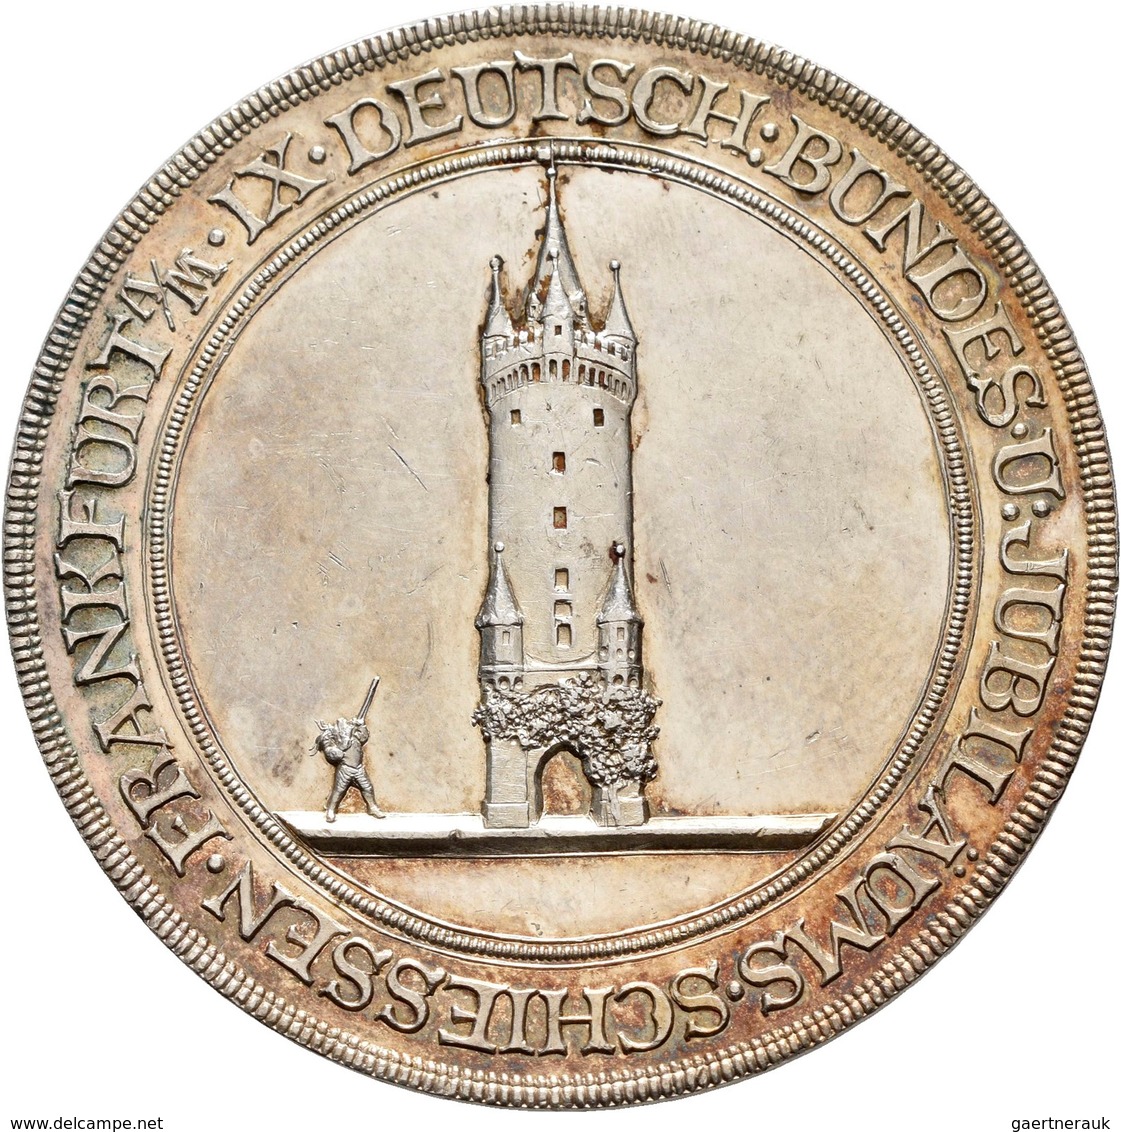 Medaillen Deutschland: 9. Deutsches Bundes-Schießen 1887 in Frankfurt a.M.: Lot 6 Medaillen; Silberm